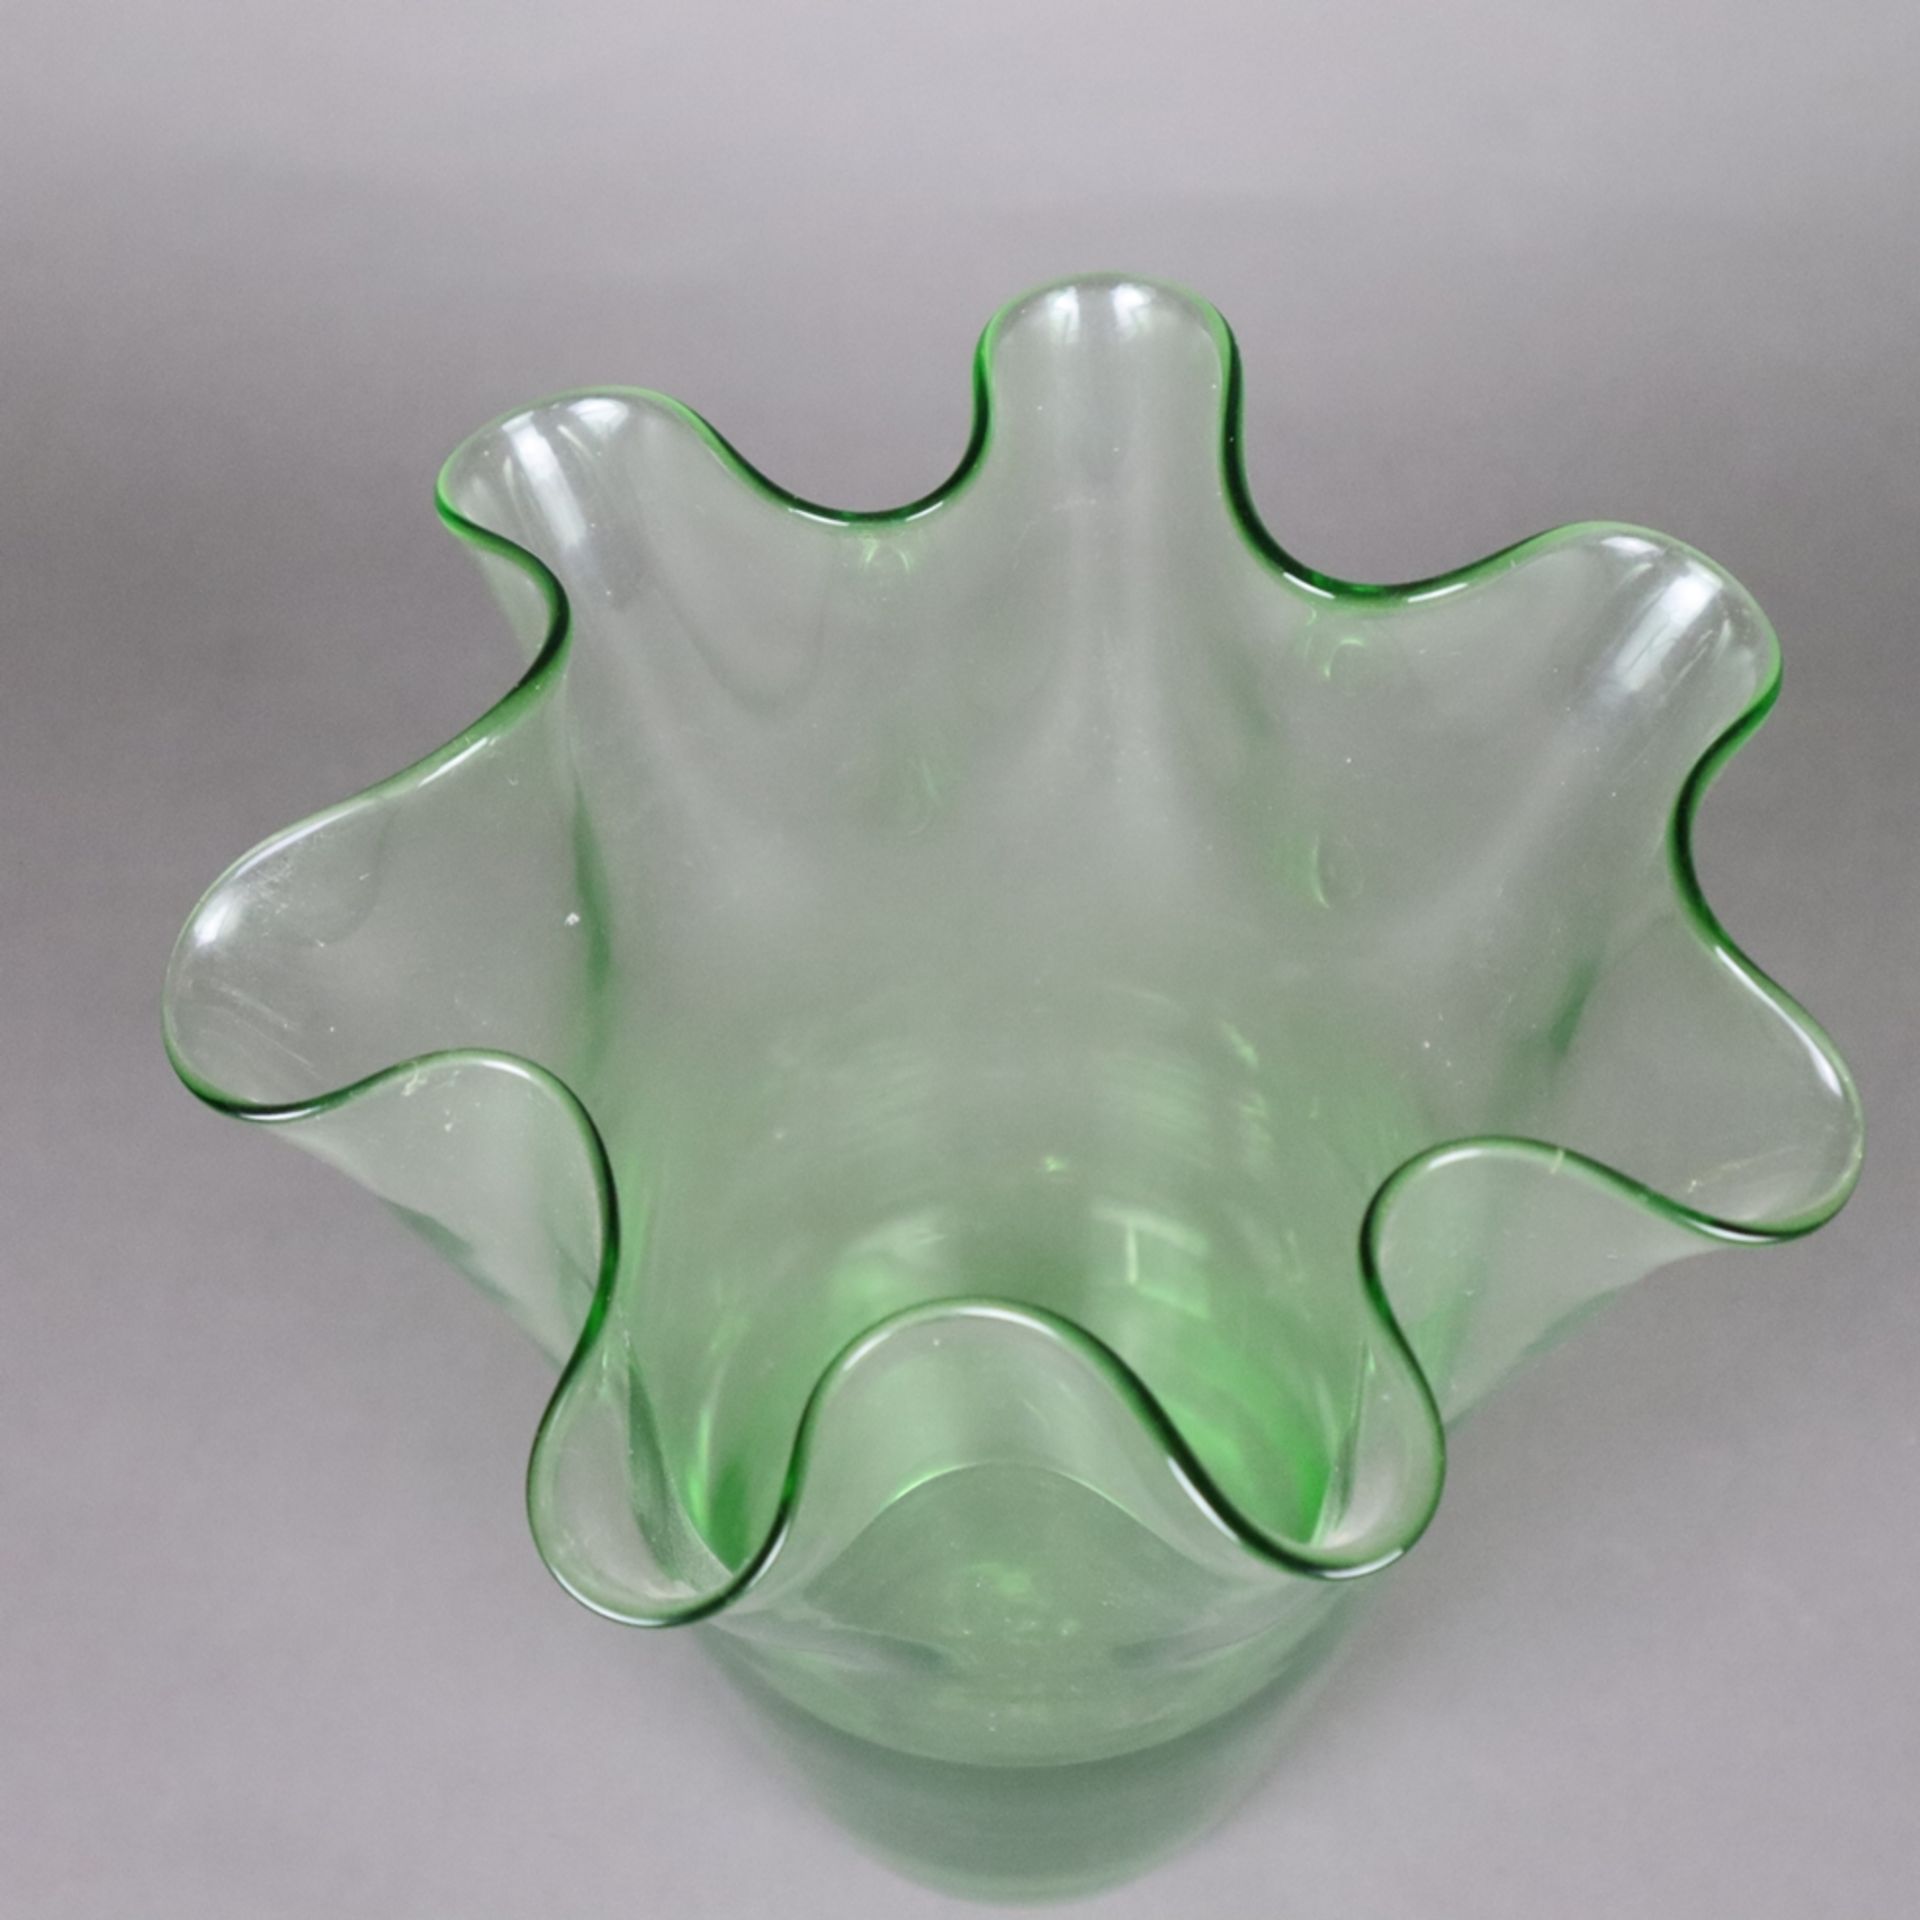 Ziervase in "Fazzoletto"- Form - Taschentuchvase, grünes Glas, mehrfach gefaltete Wandung, Boden - Bild 3 aus 7